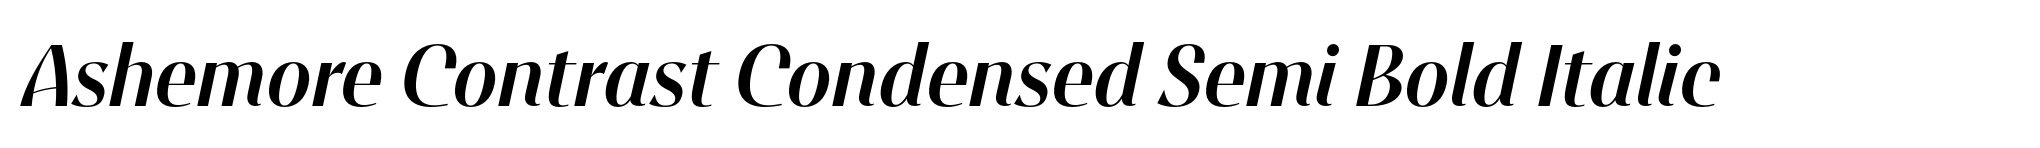 Ashemore Contrast Condensed Semi Bold Italic image